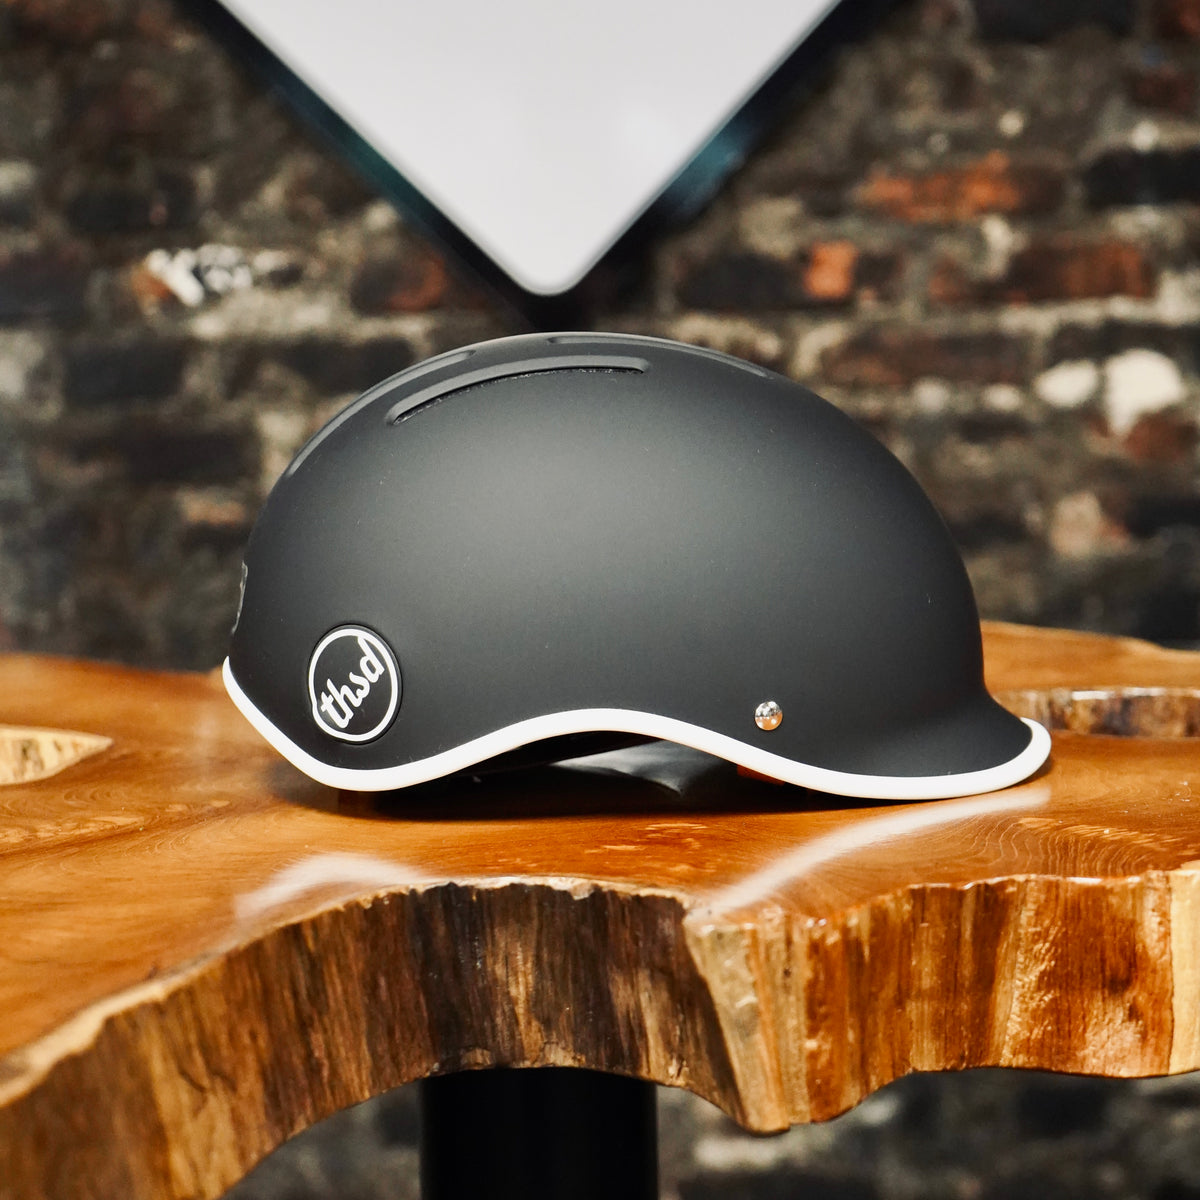 Thousand - Heritage 2.0 Bike &amp; Skate Helmet